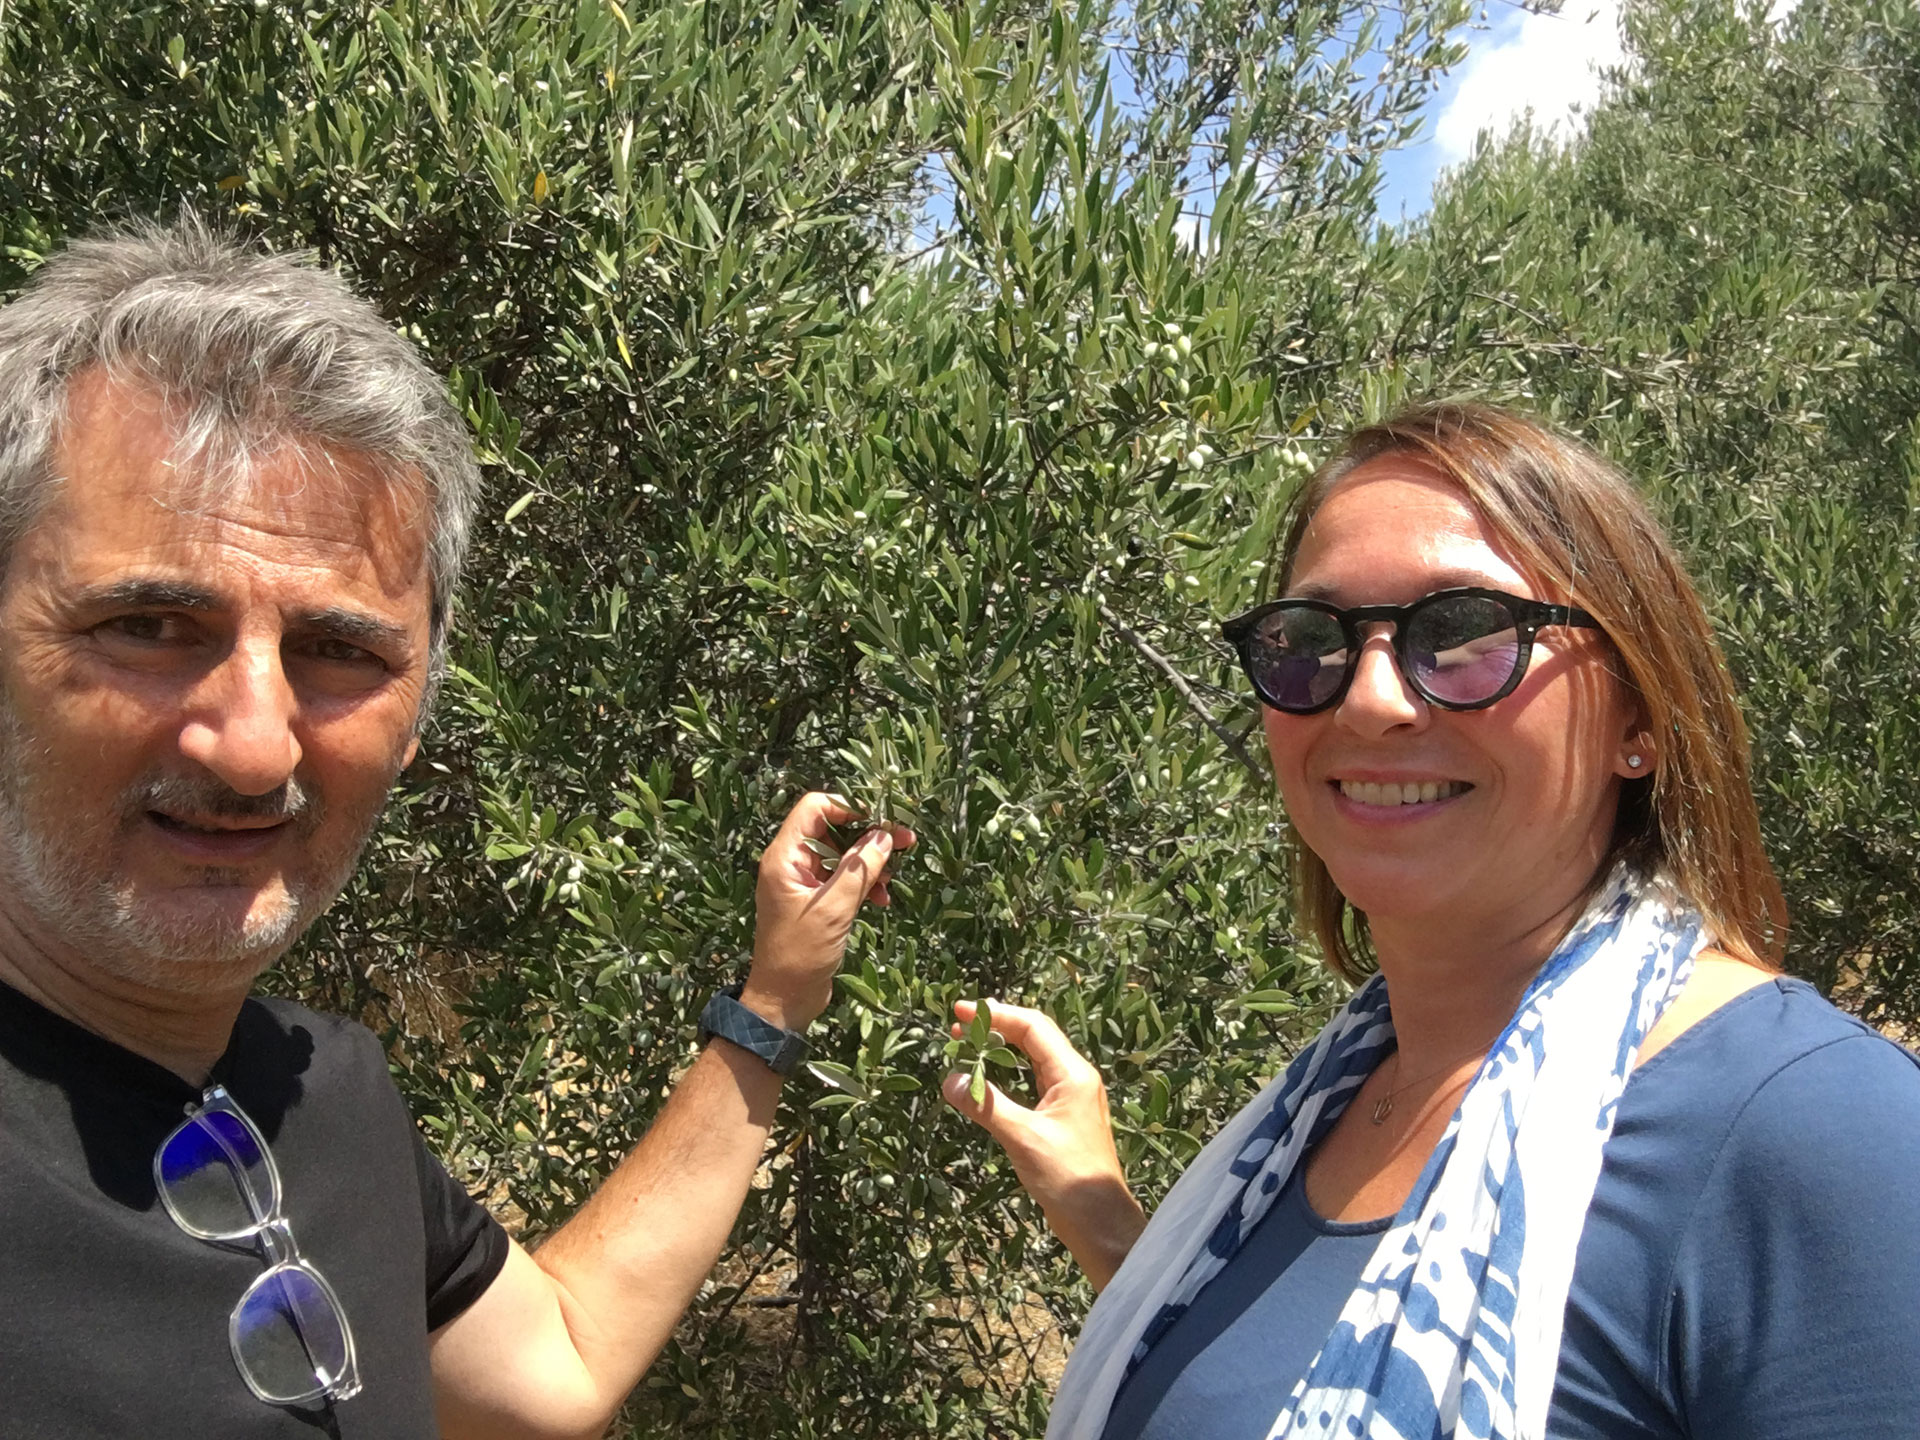 Oblivion Olivenöl. Babis Ioannidis und Karin Zacher vor einem Olivenbaum.